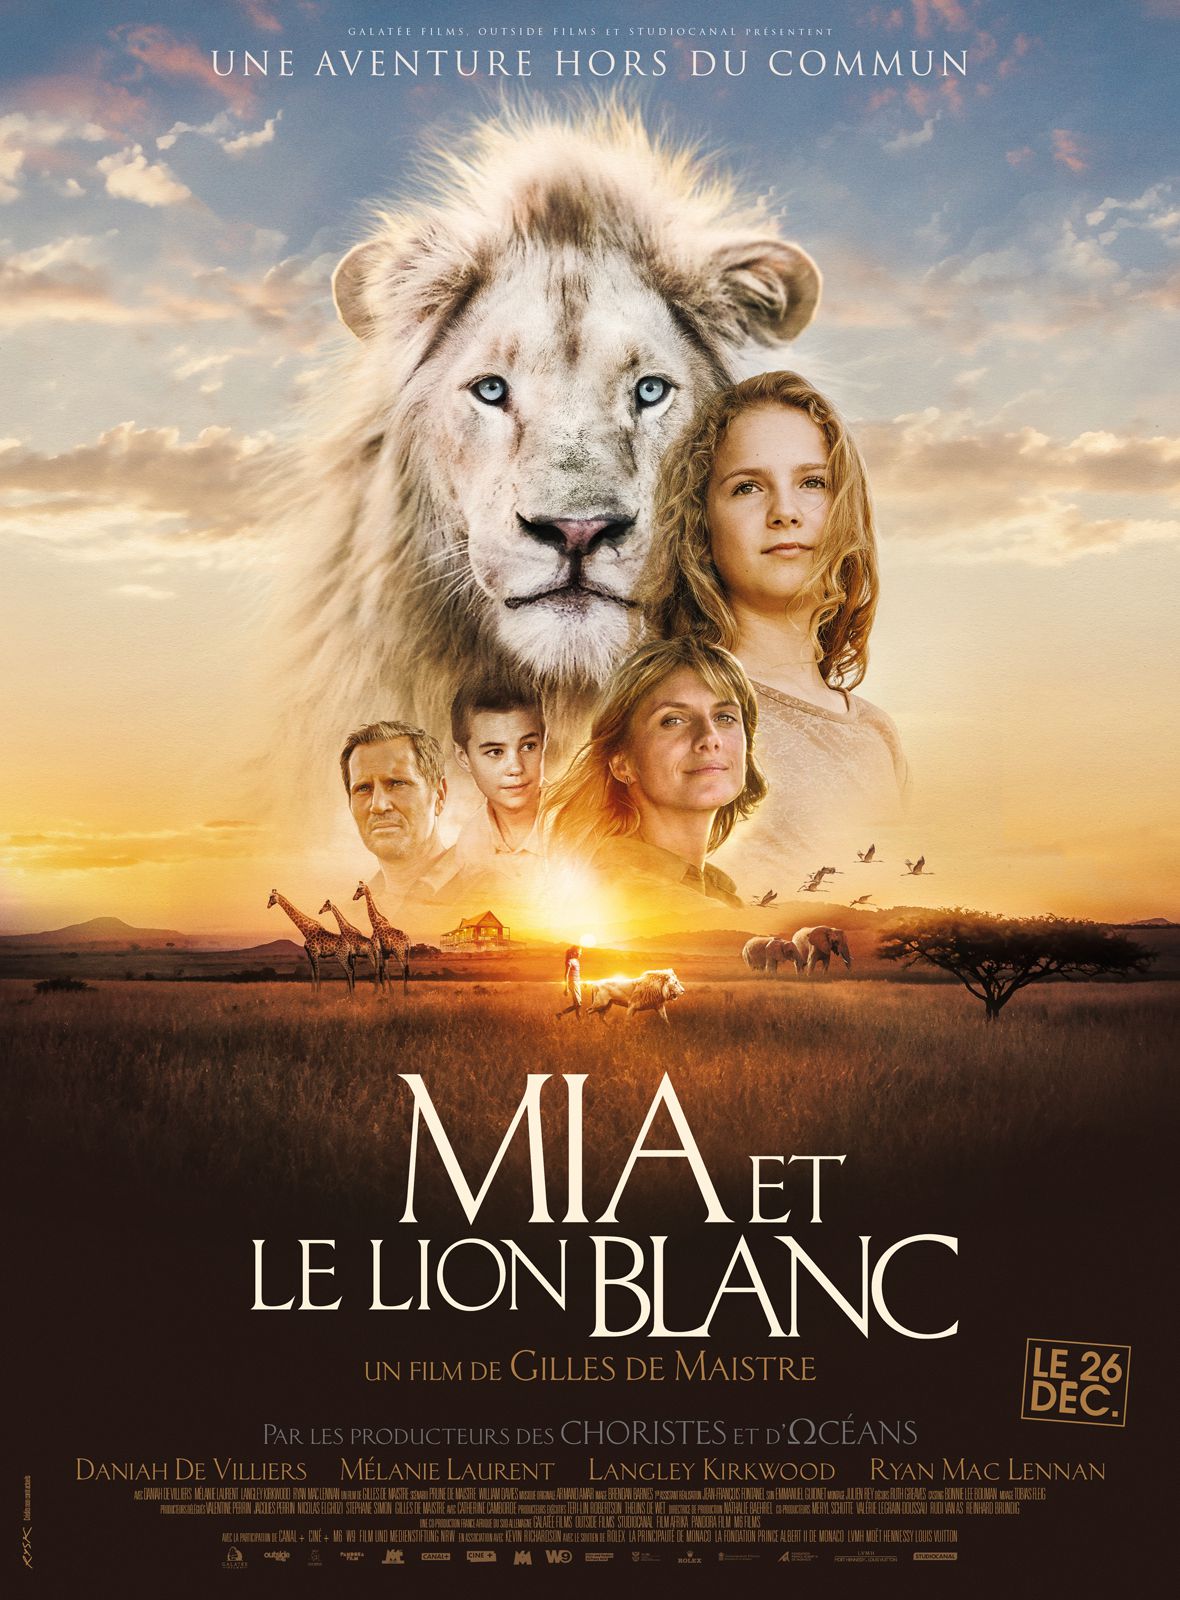 Mia et le Lion blanc - Film (2018) streaming VF gratuit complet